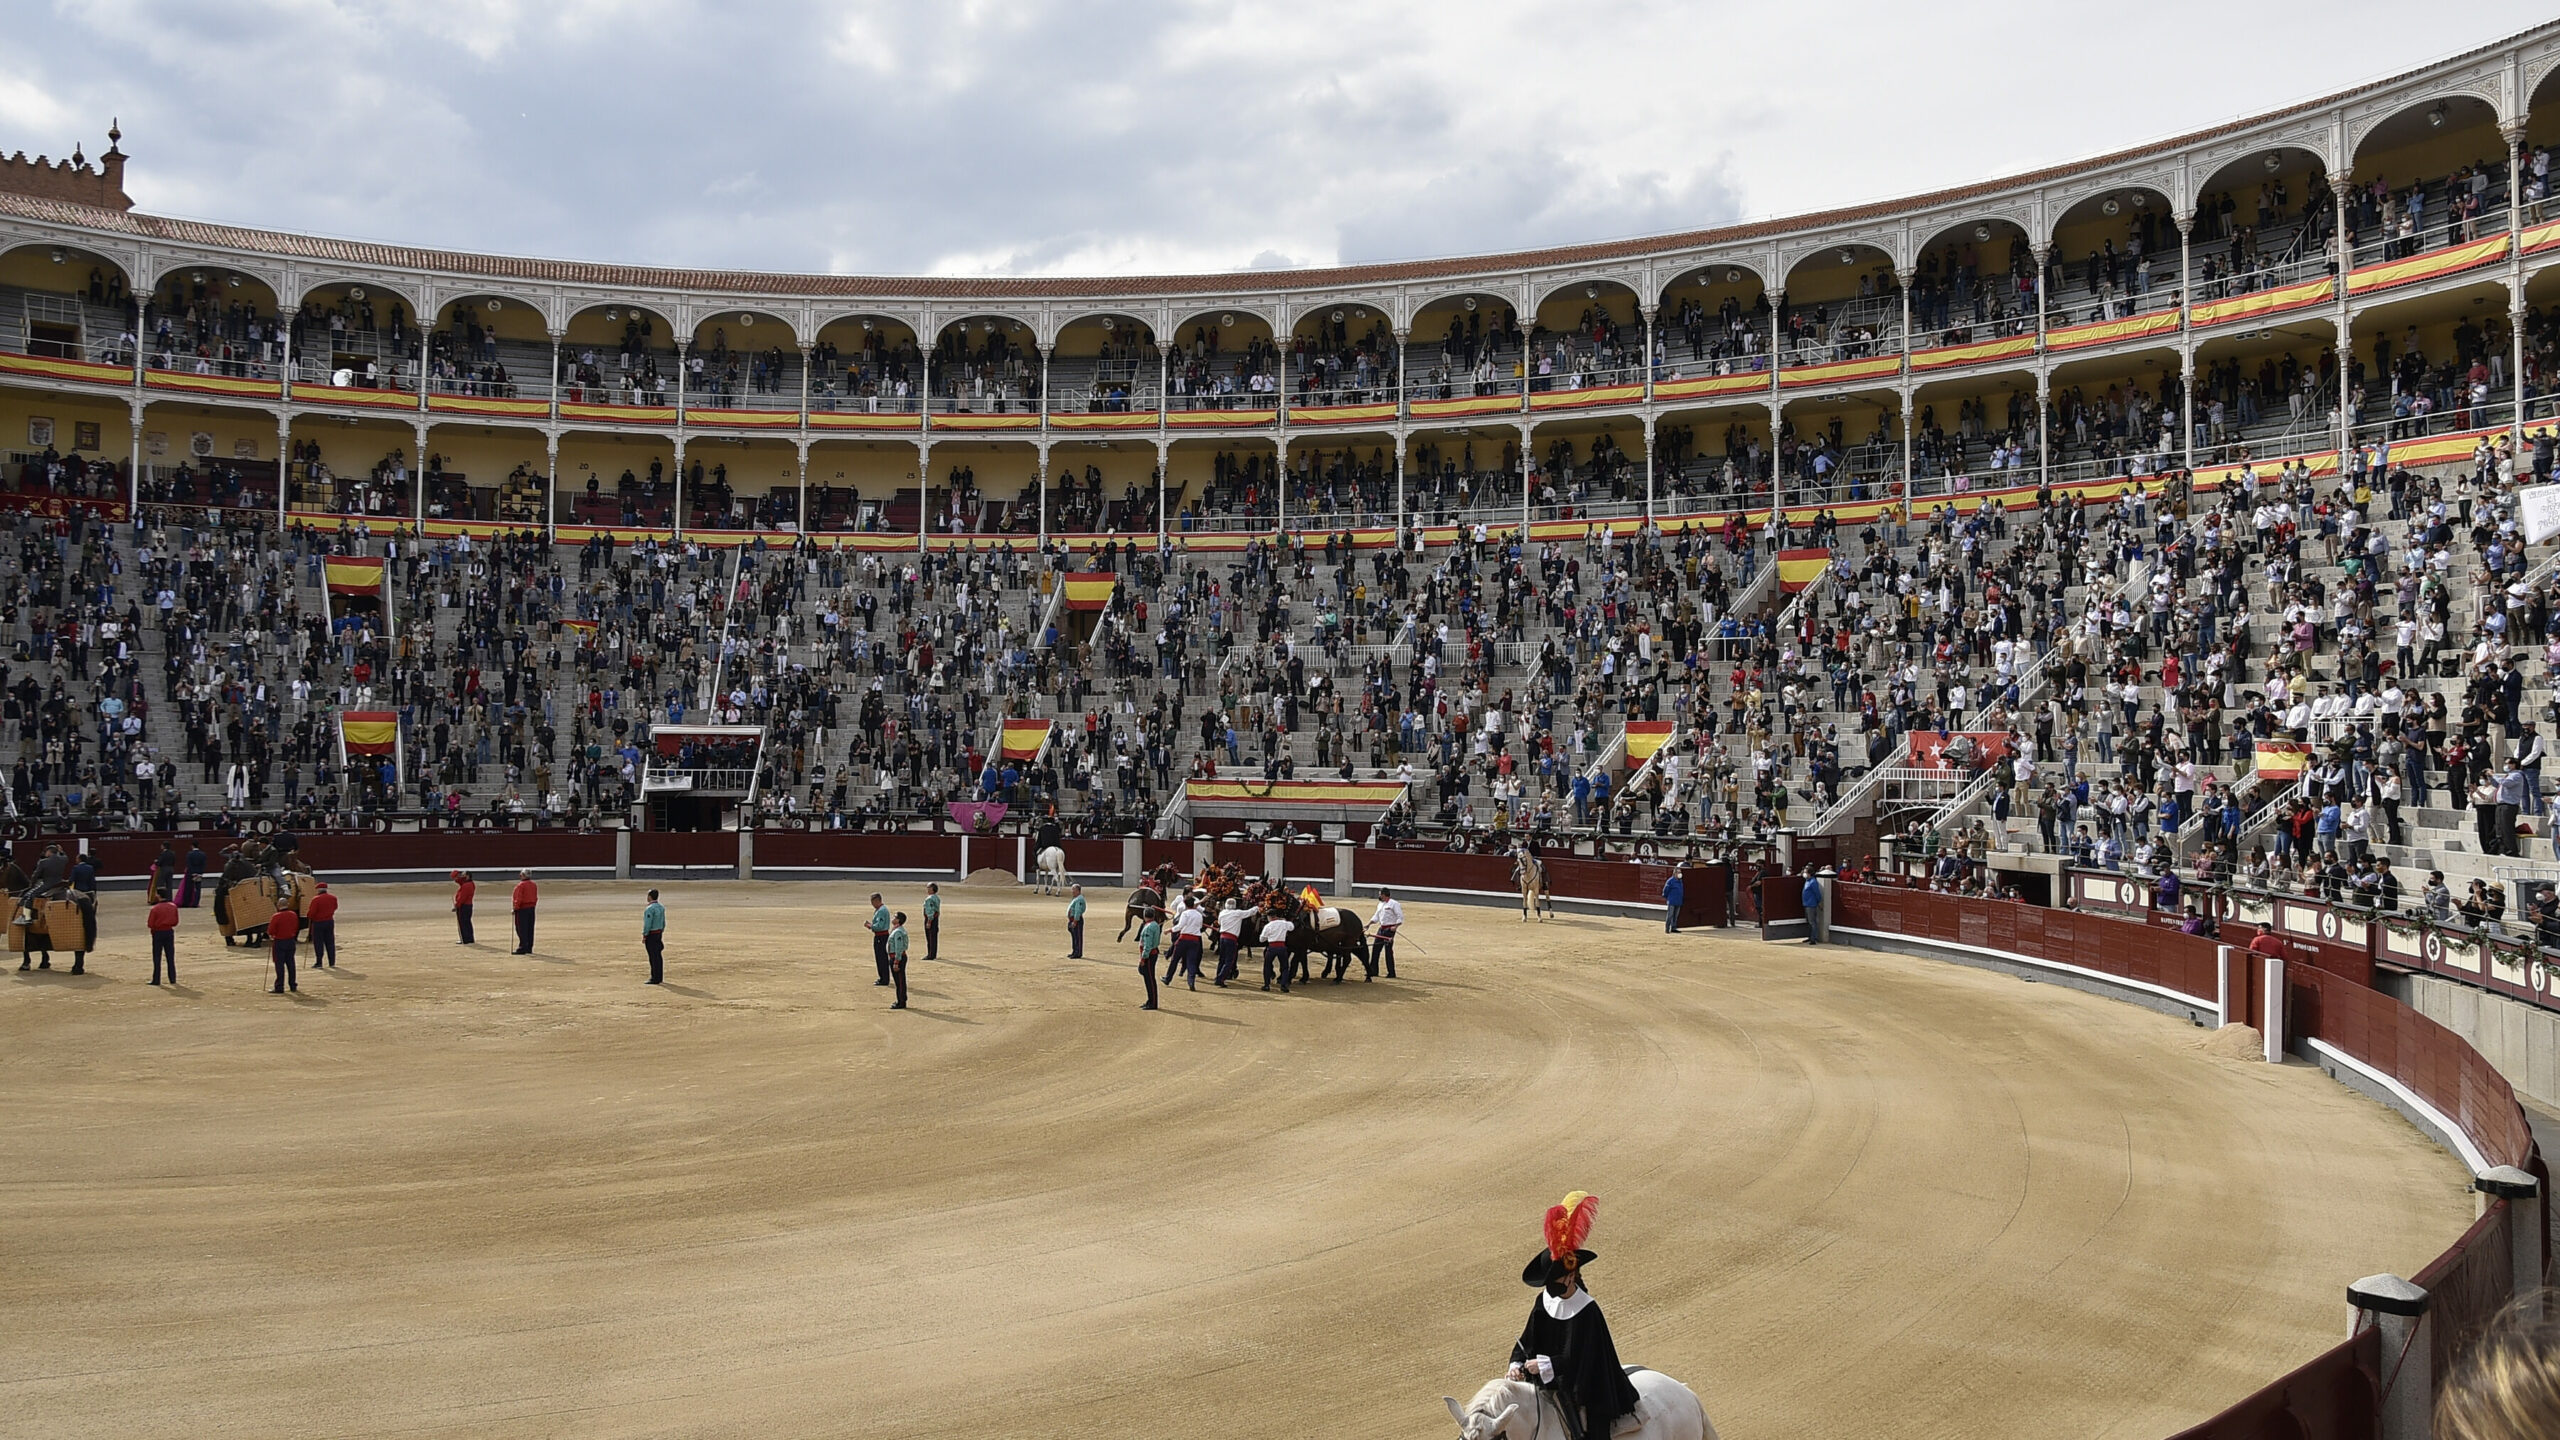 Las Ventas acogerá dos corridas de toros el 26 de junio y 4 de julio con aforo limitado a 6.000 personas